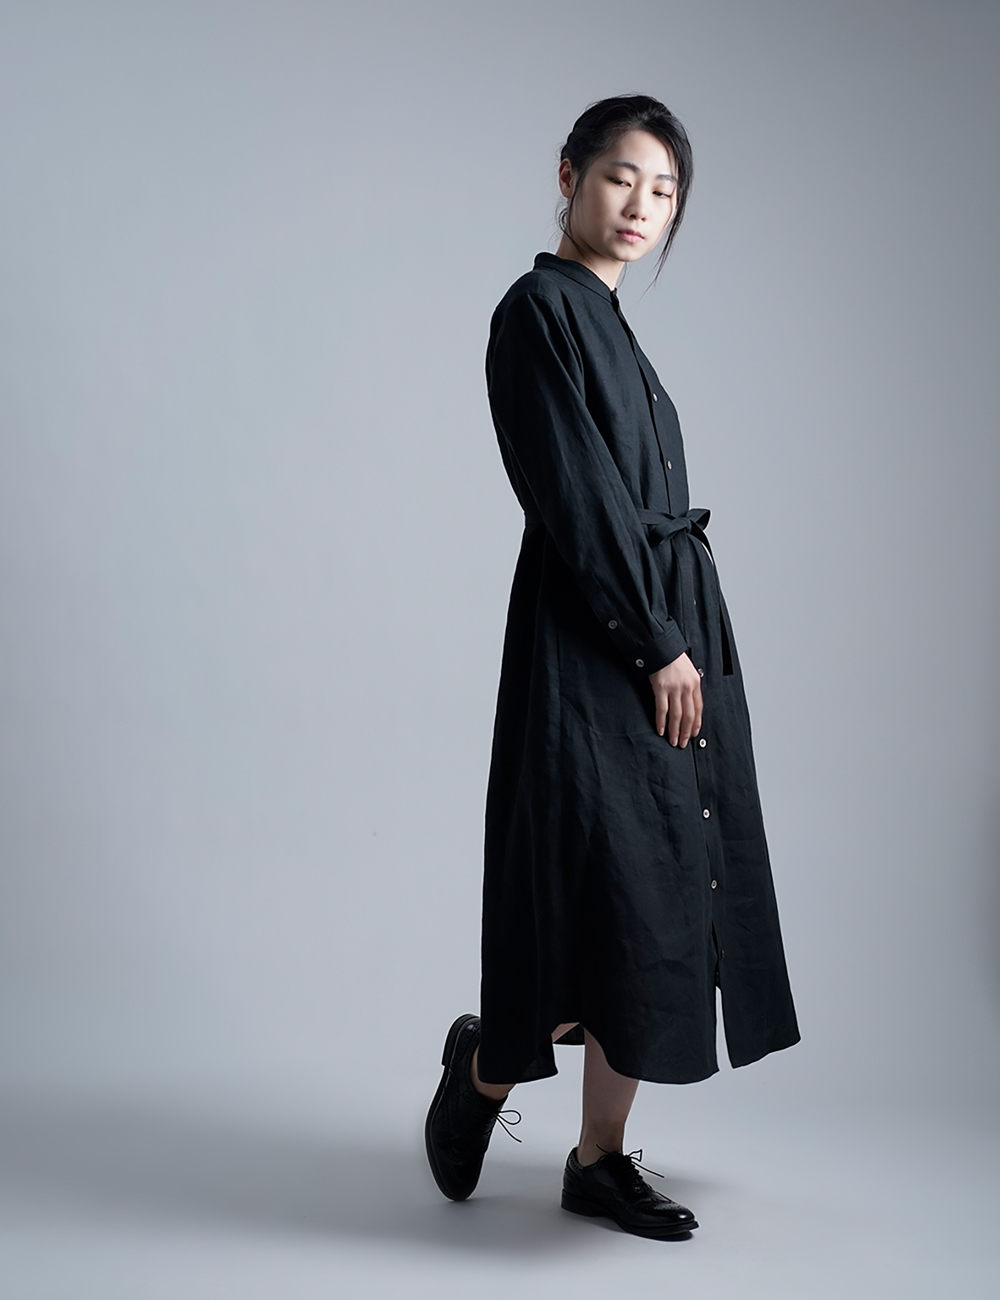 【LINE企画】Linen Dress すっきりシャツテール ワンピース / 黒色 a015c-bck1